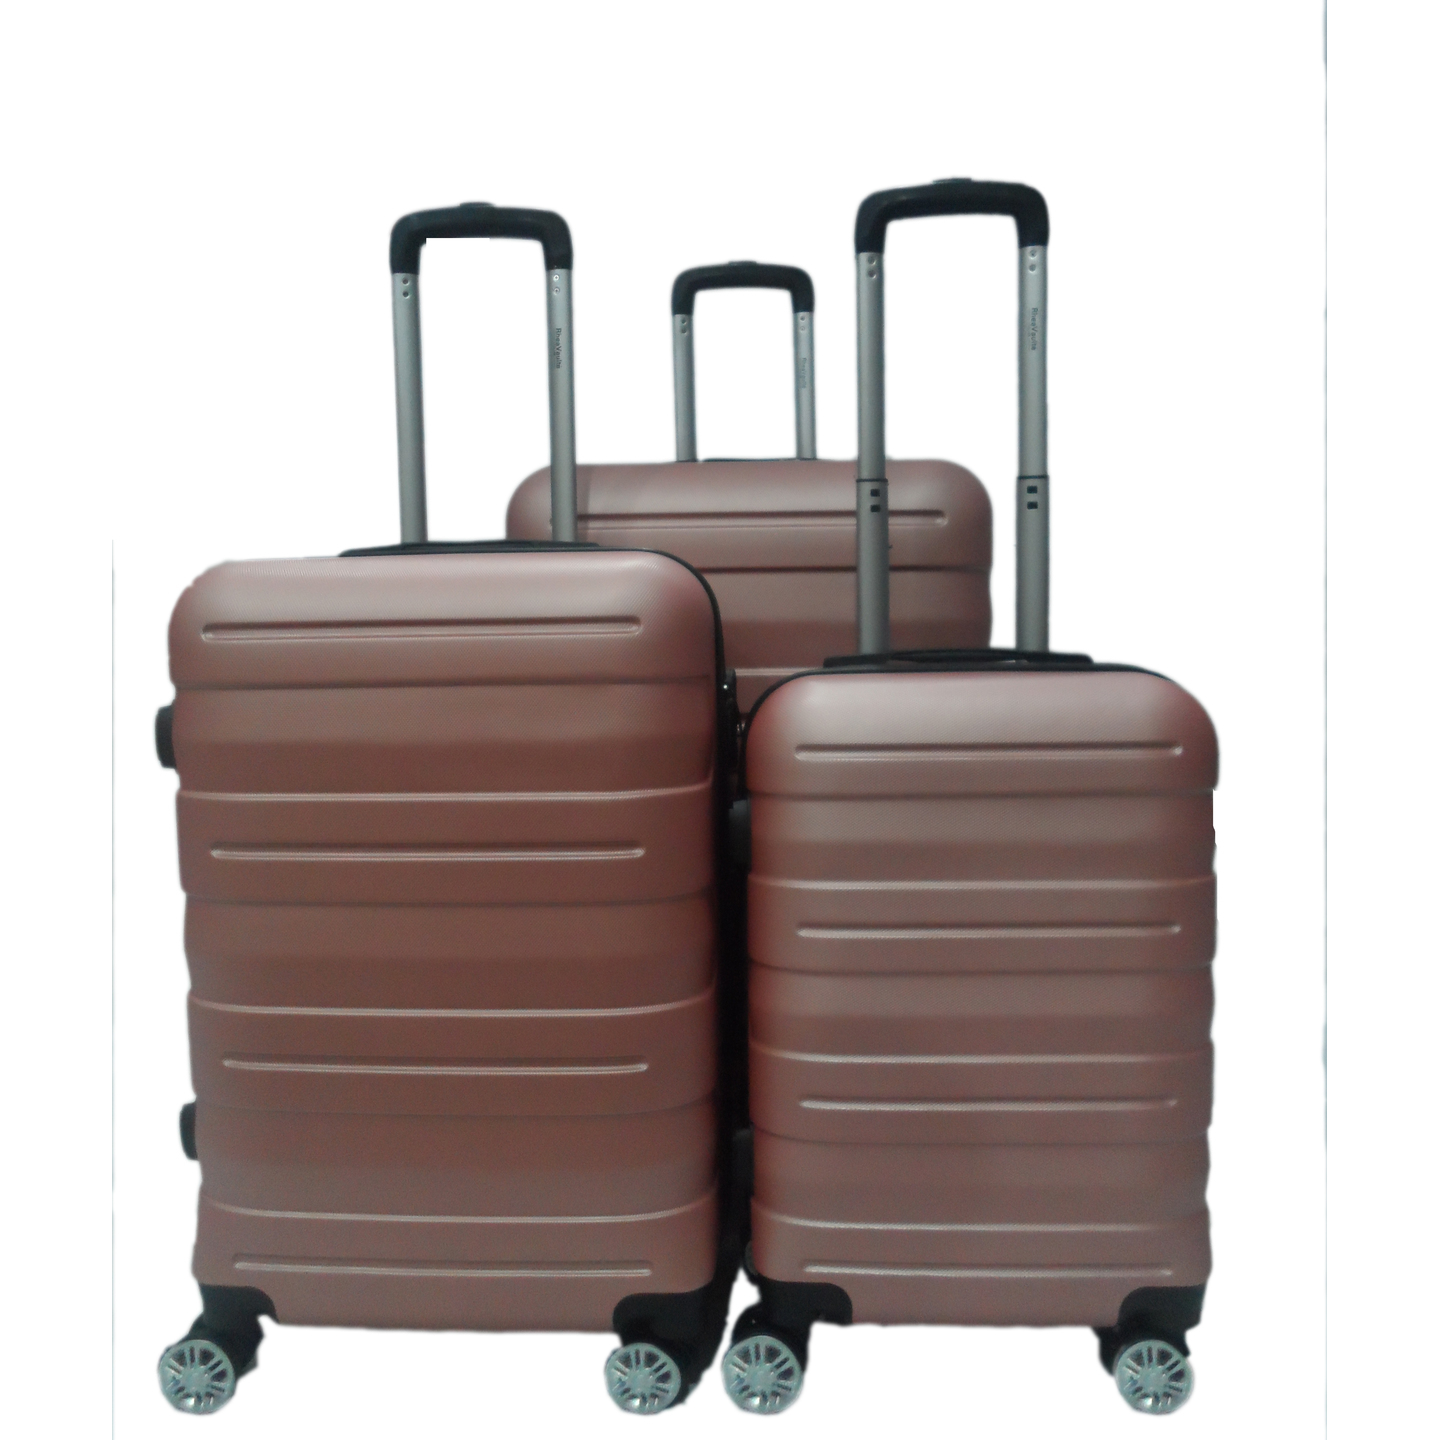 RV 130  Elegant Hard Box Luggage- Rose Gold  20 inch, 24 inch, 28 inch